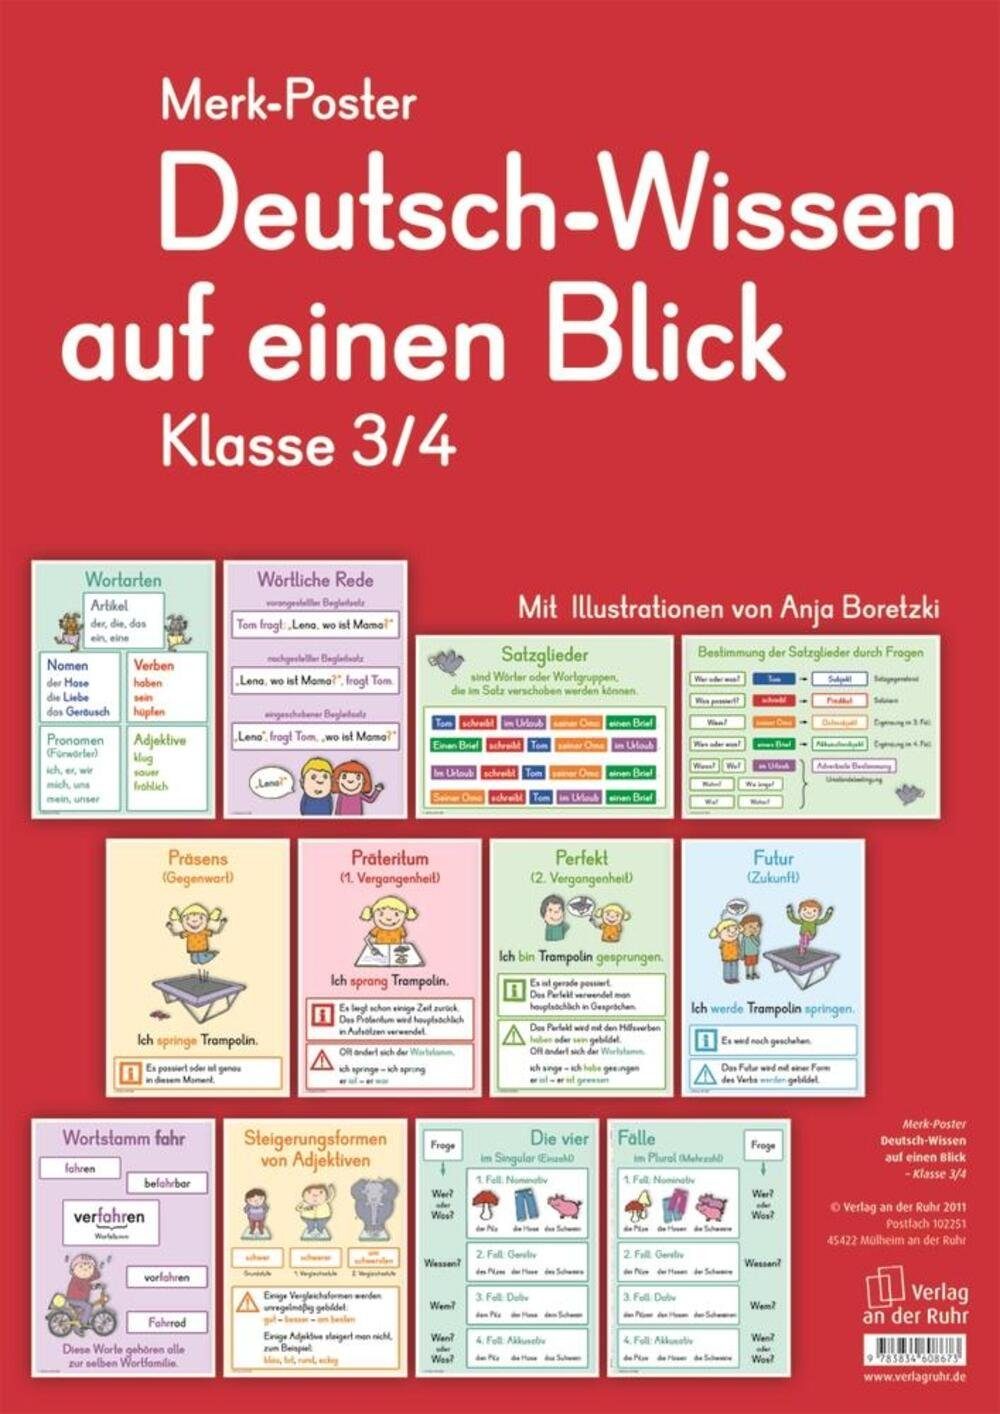 Verlag an der Ruhr Poster Merk-Poster Deutsch-Wissen auf einen Blick Klasse  3/4